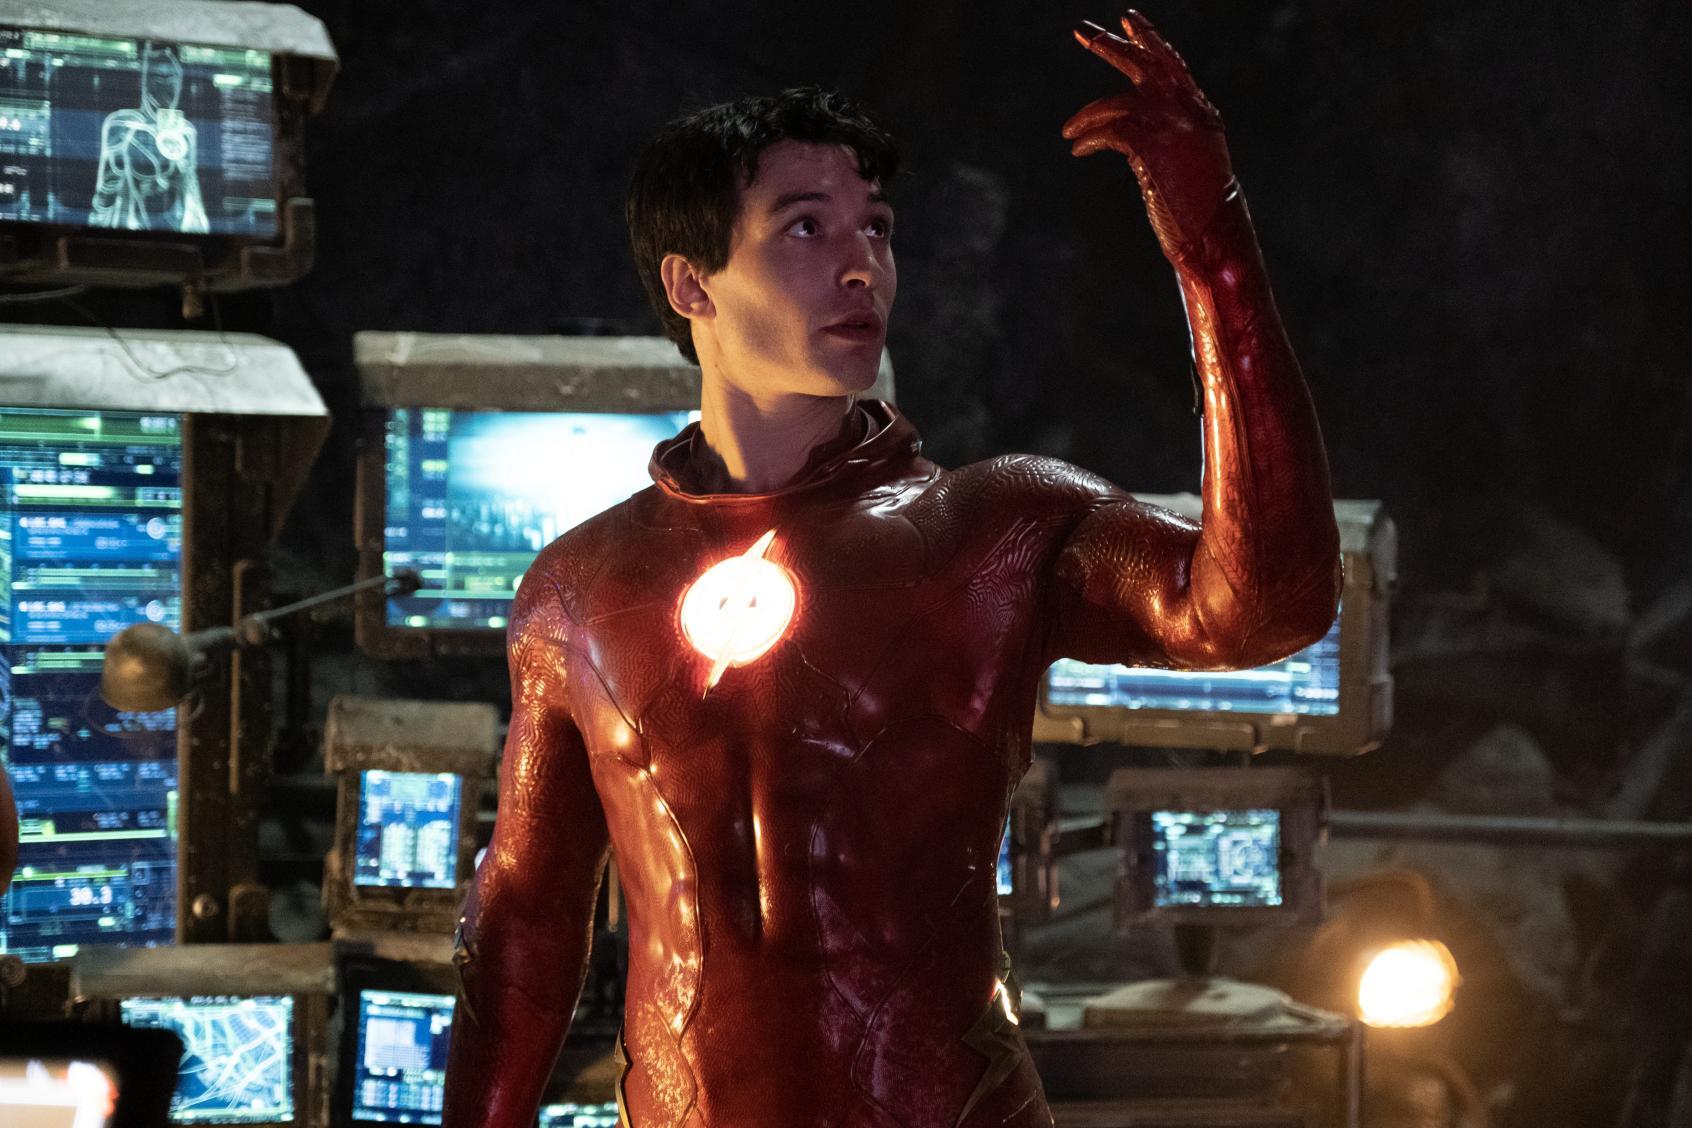 The Flash: Nový trailer s hromadou dosud neviděných záběrů | Fandíme filmu